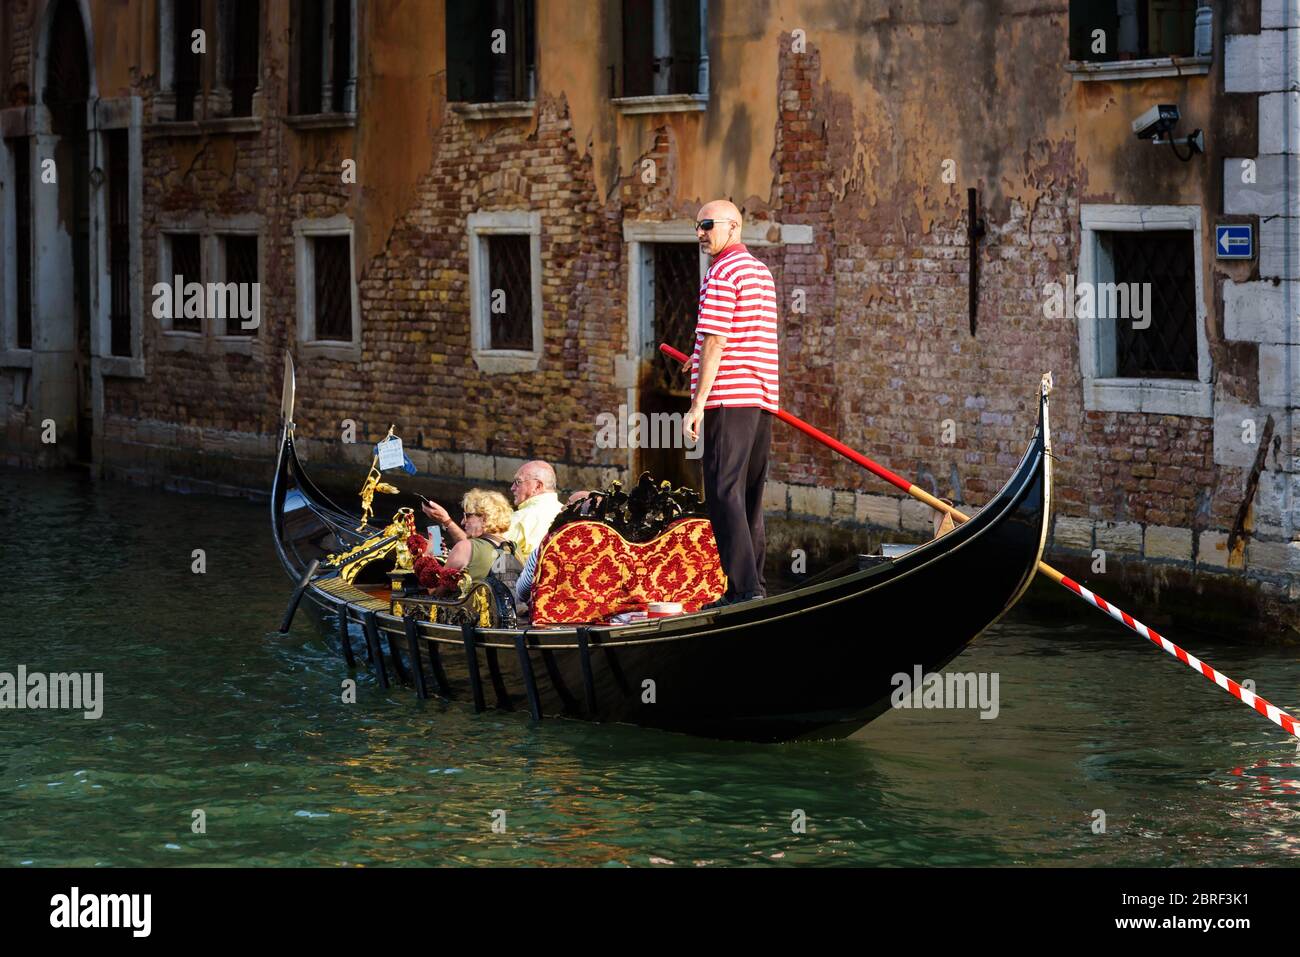 Venedig, Italien - 18. Mai 2017: Gondel mit Menschen fährt auf einem alten Kanal in Venedig. Gondel ist ein sehr attraktiver Touristenverkehr in Venedig. Romantisch Stockfoto